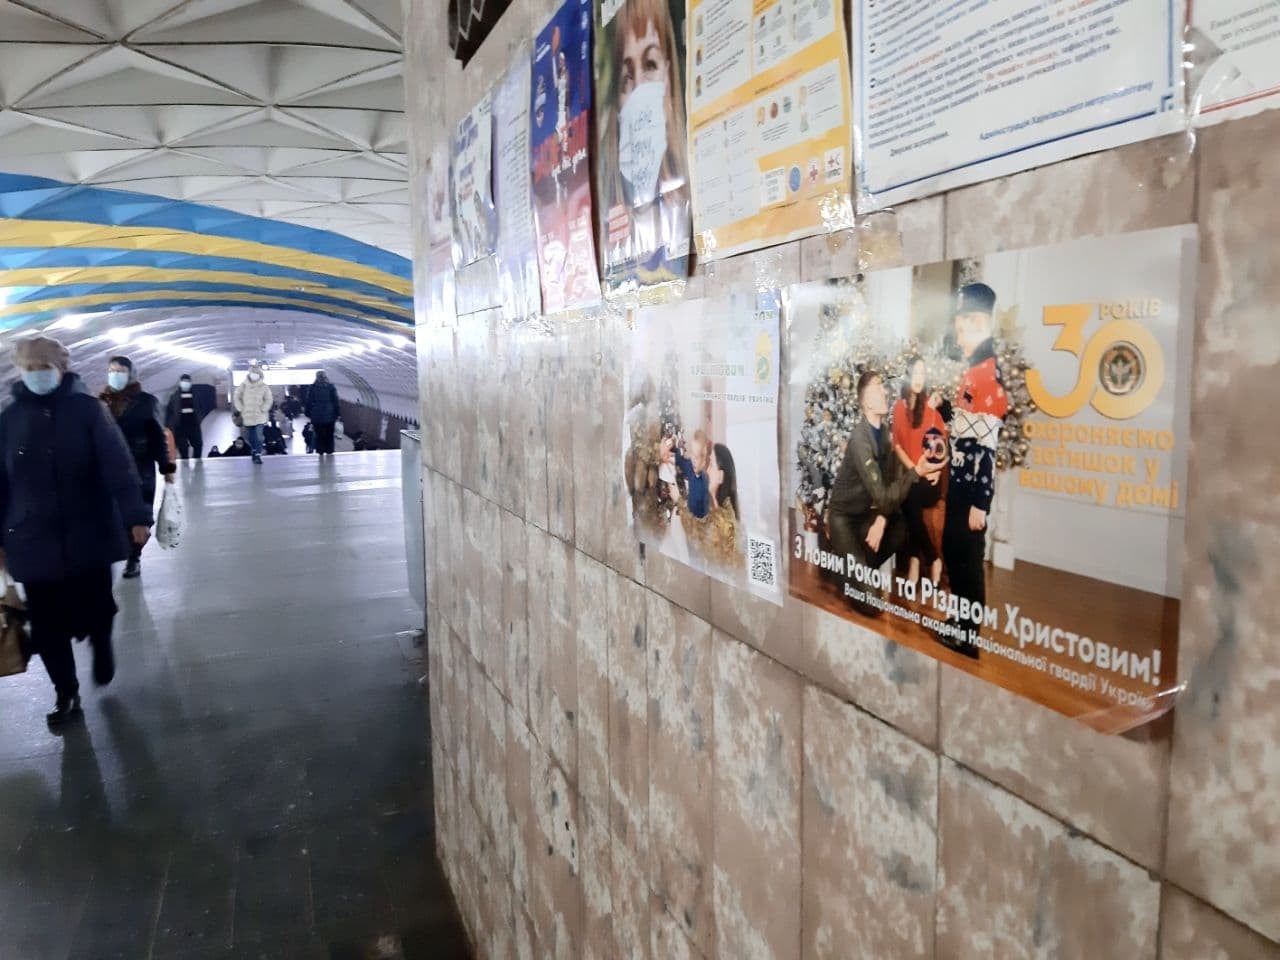 Открытки с поздравлениями от нацгвардейцев появились в Харьковском метрополитене